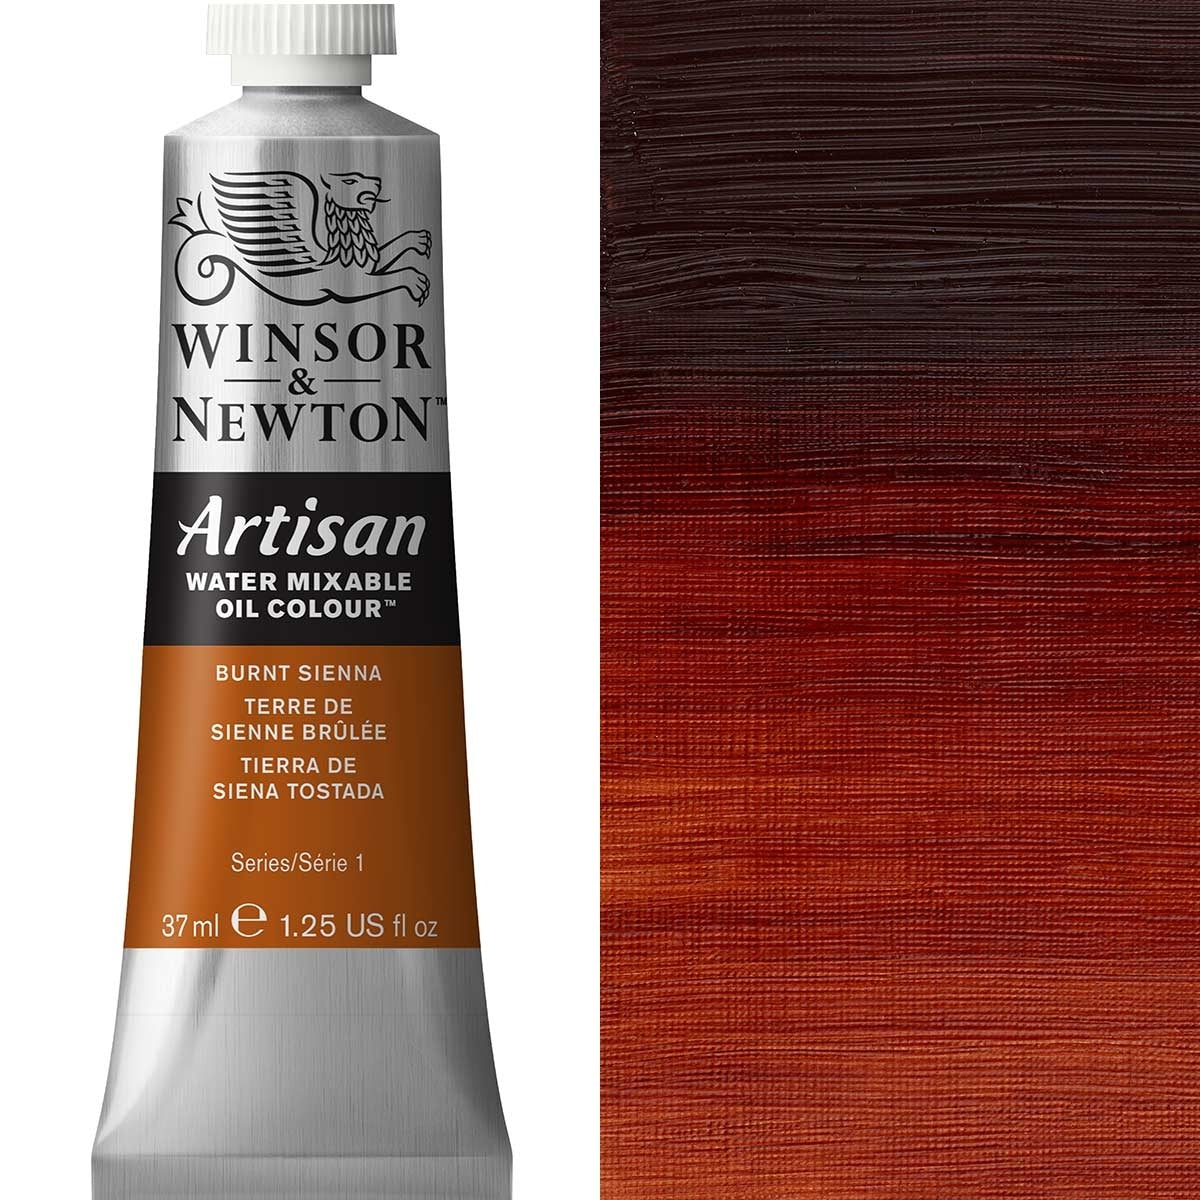 Winsor e Newton - Watermixable di colore olio artigianale - 37 ml - - SIENNA BRUCT